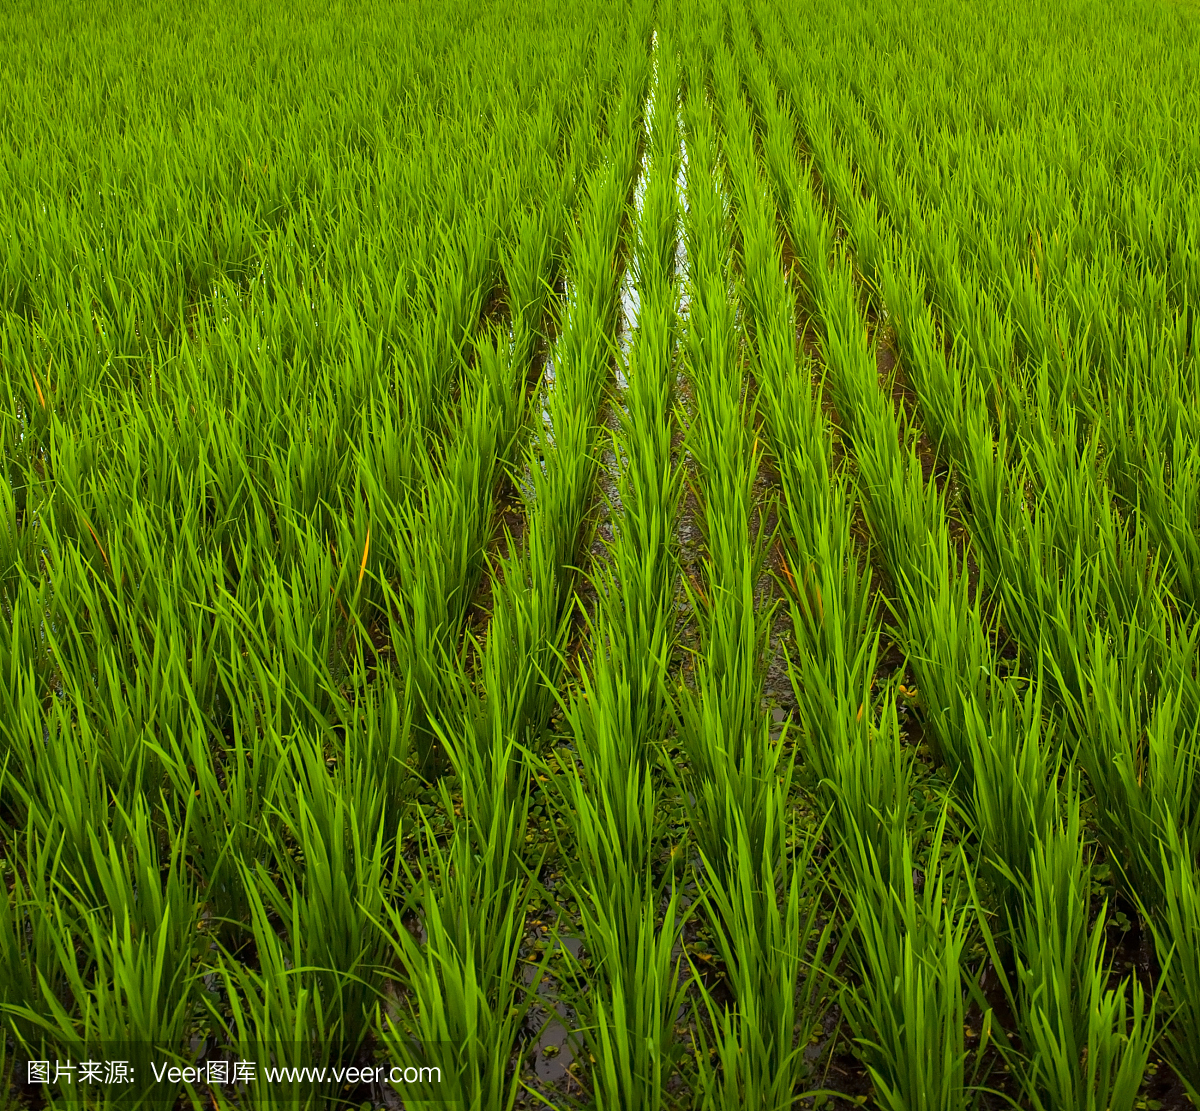 巴厘岛,印度尼西亚的稻田